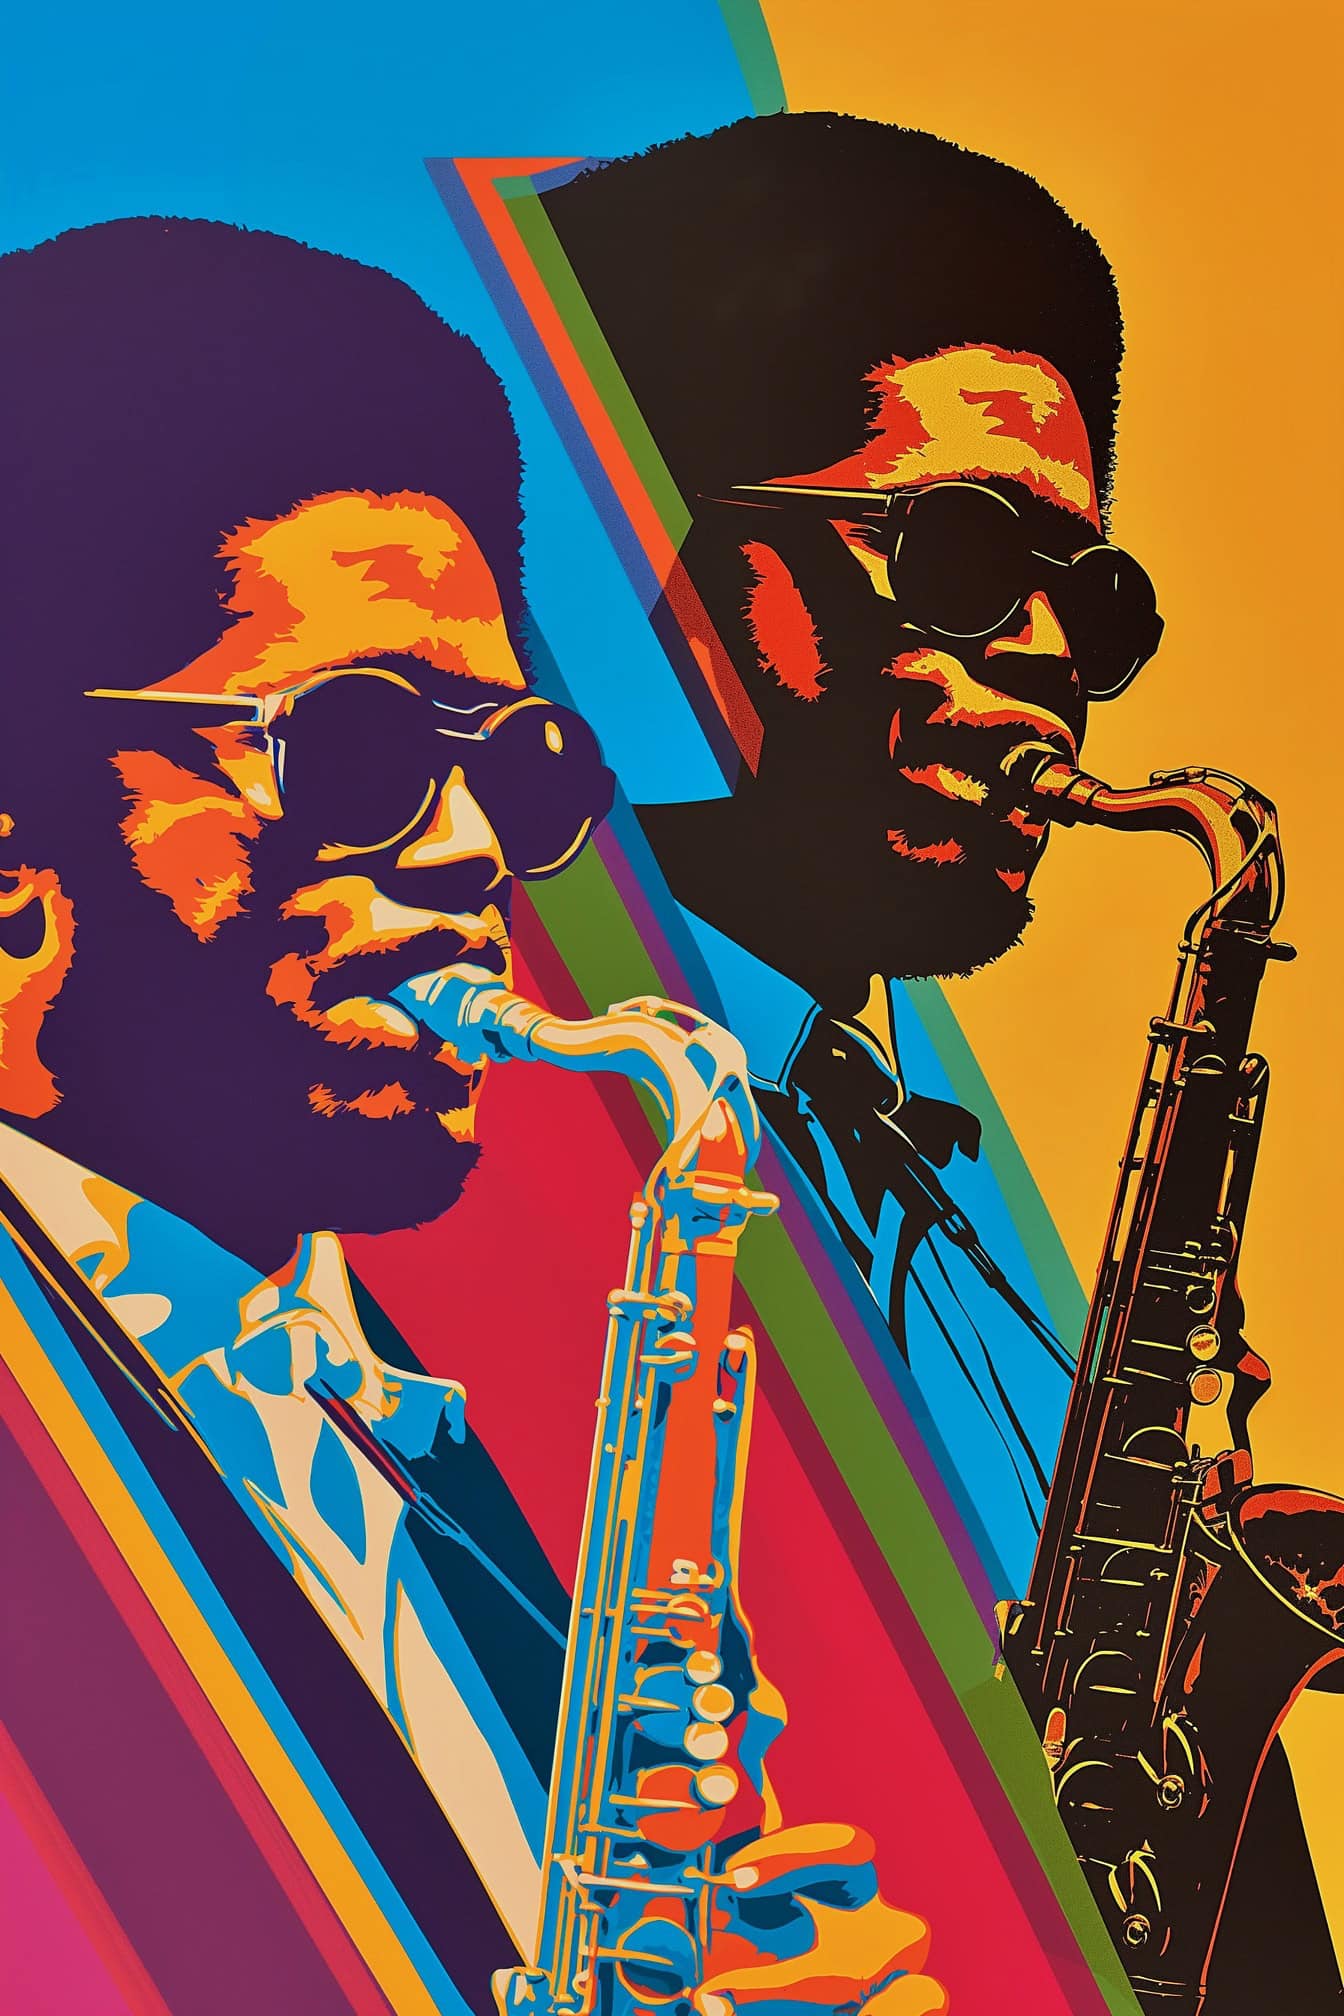 A 70-es évek retro stílusú plakátja egy szaxofonon játszó afroamerikai zenészről